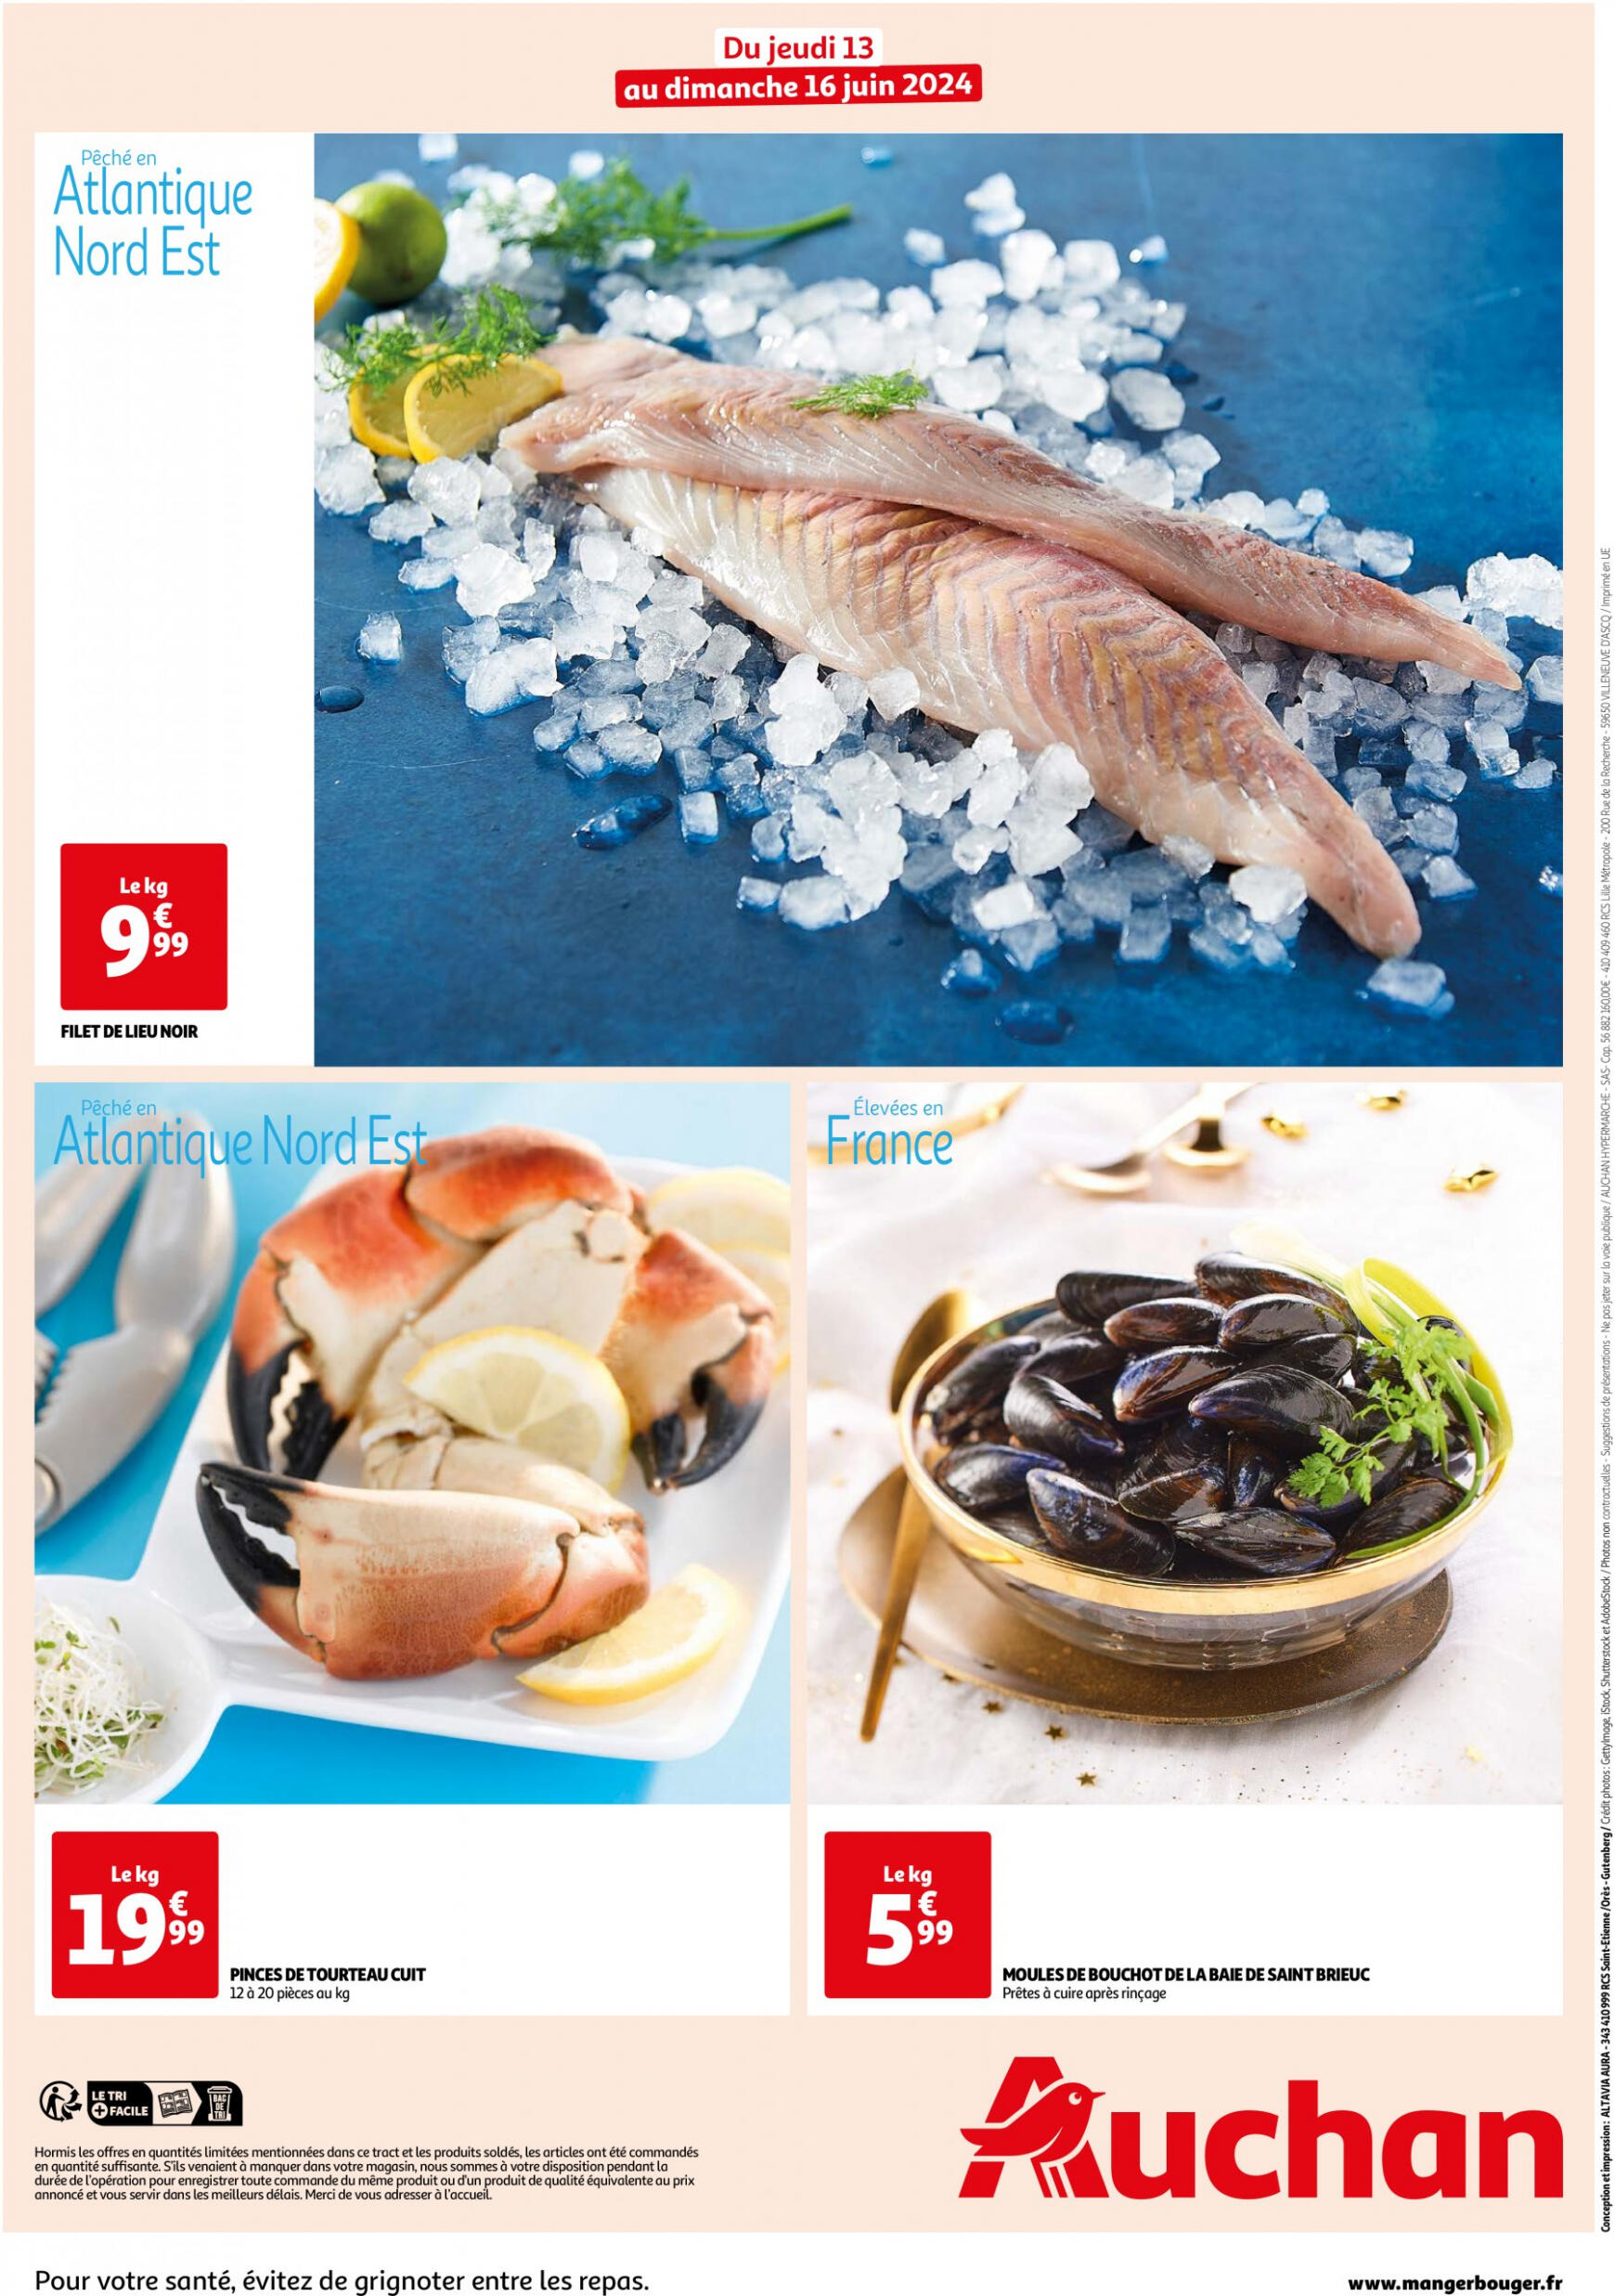 auchan - Prospectus Auchan - Les bons plans du week-end dans votre hyper ! actuel 13.06. - 16.06. - page: 2